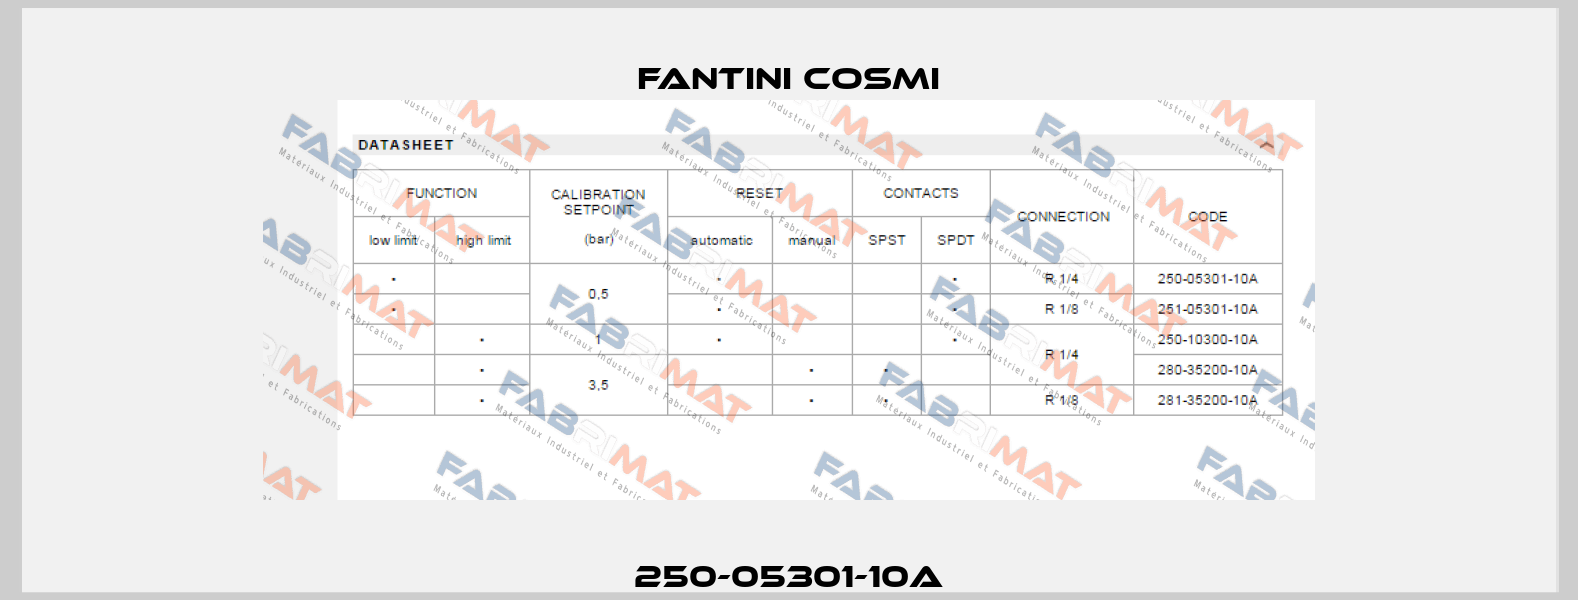 250-05301-10A Fantini Cosmi